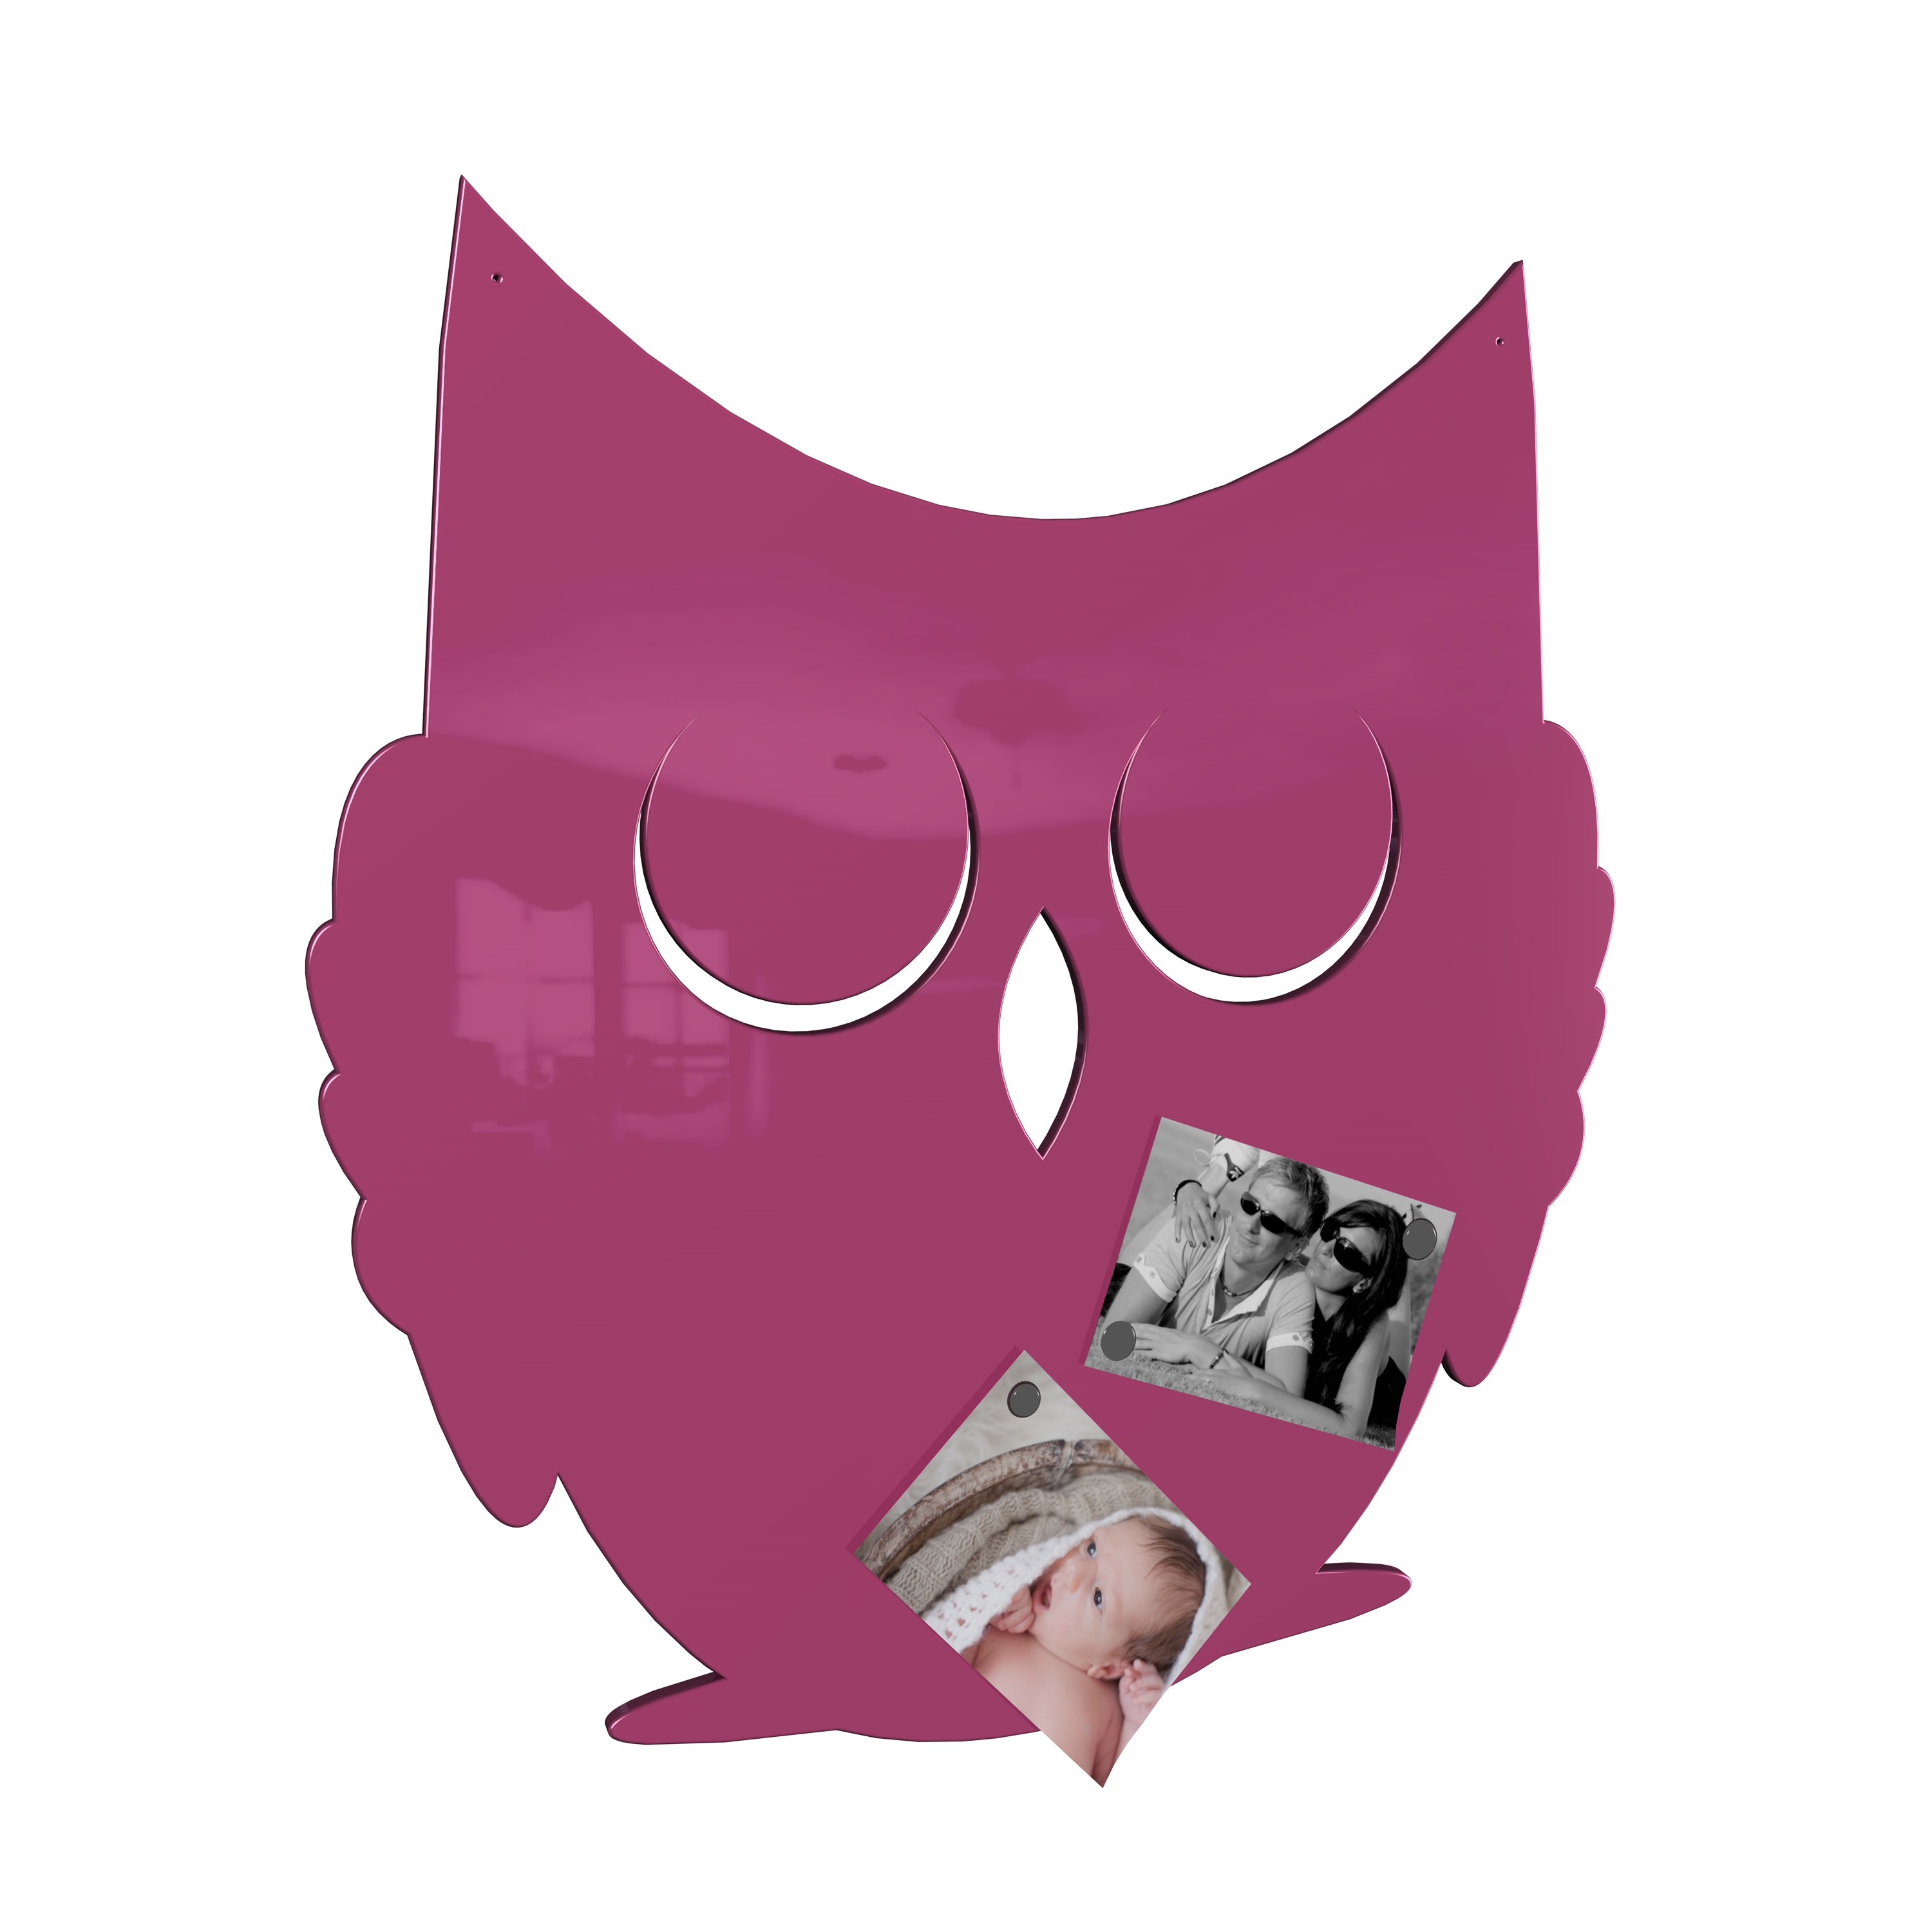 Magnetwand Magnettafel Memoboard - Eule - RAL 4010 telemagenta pink rosa